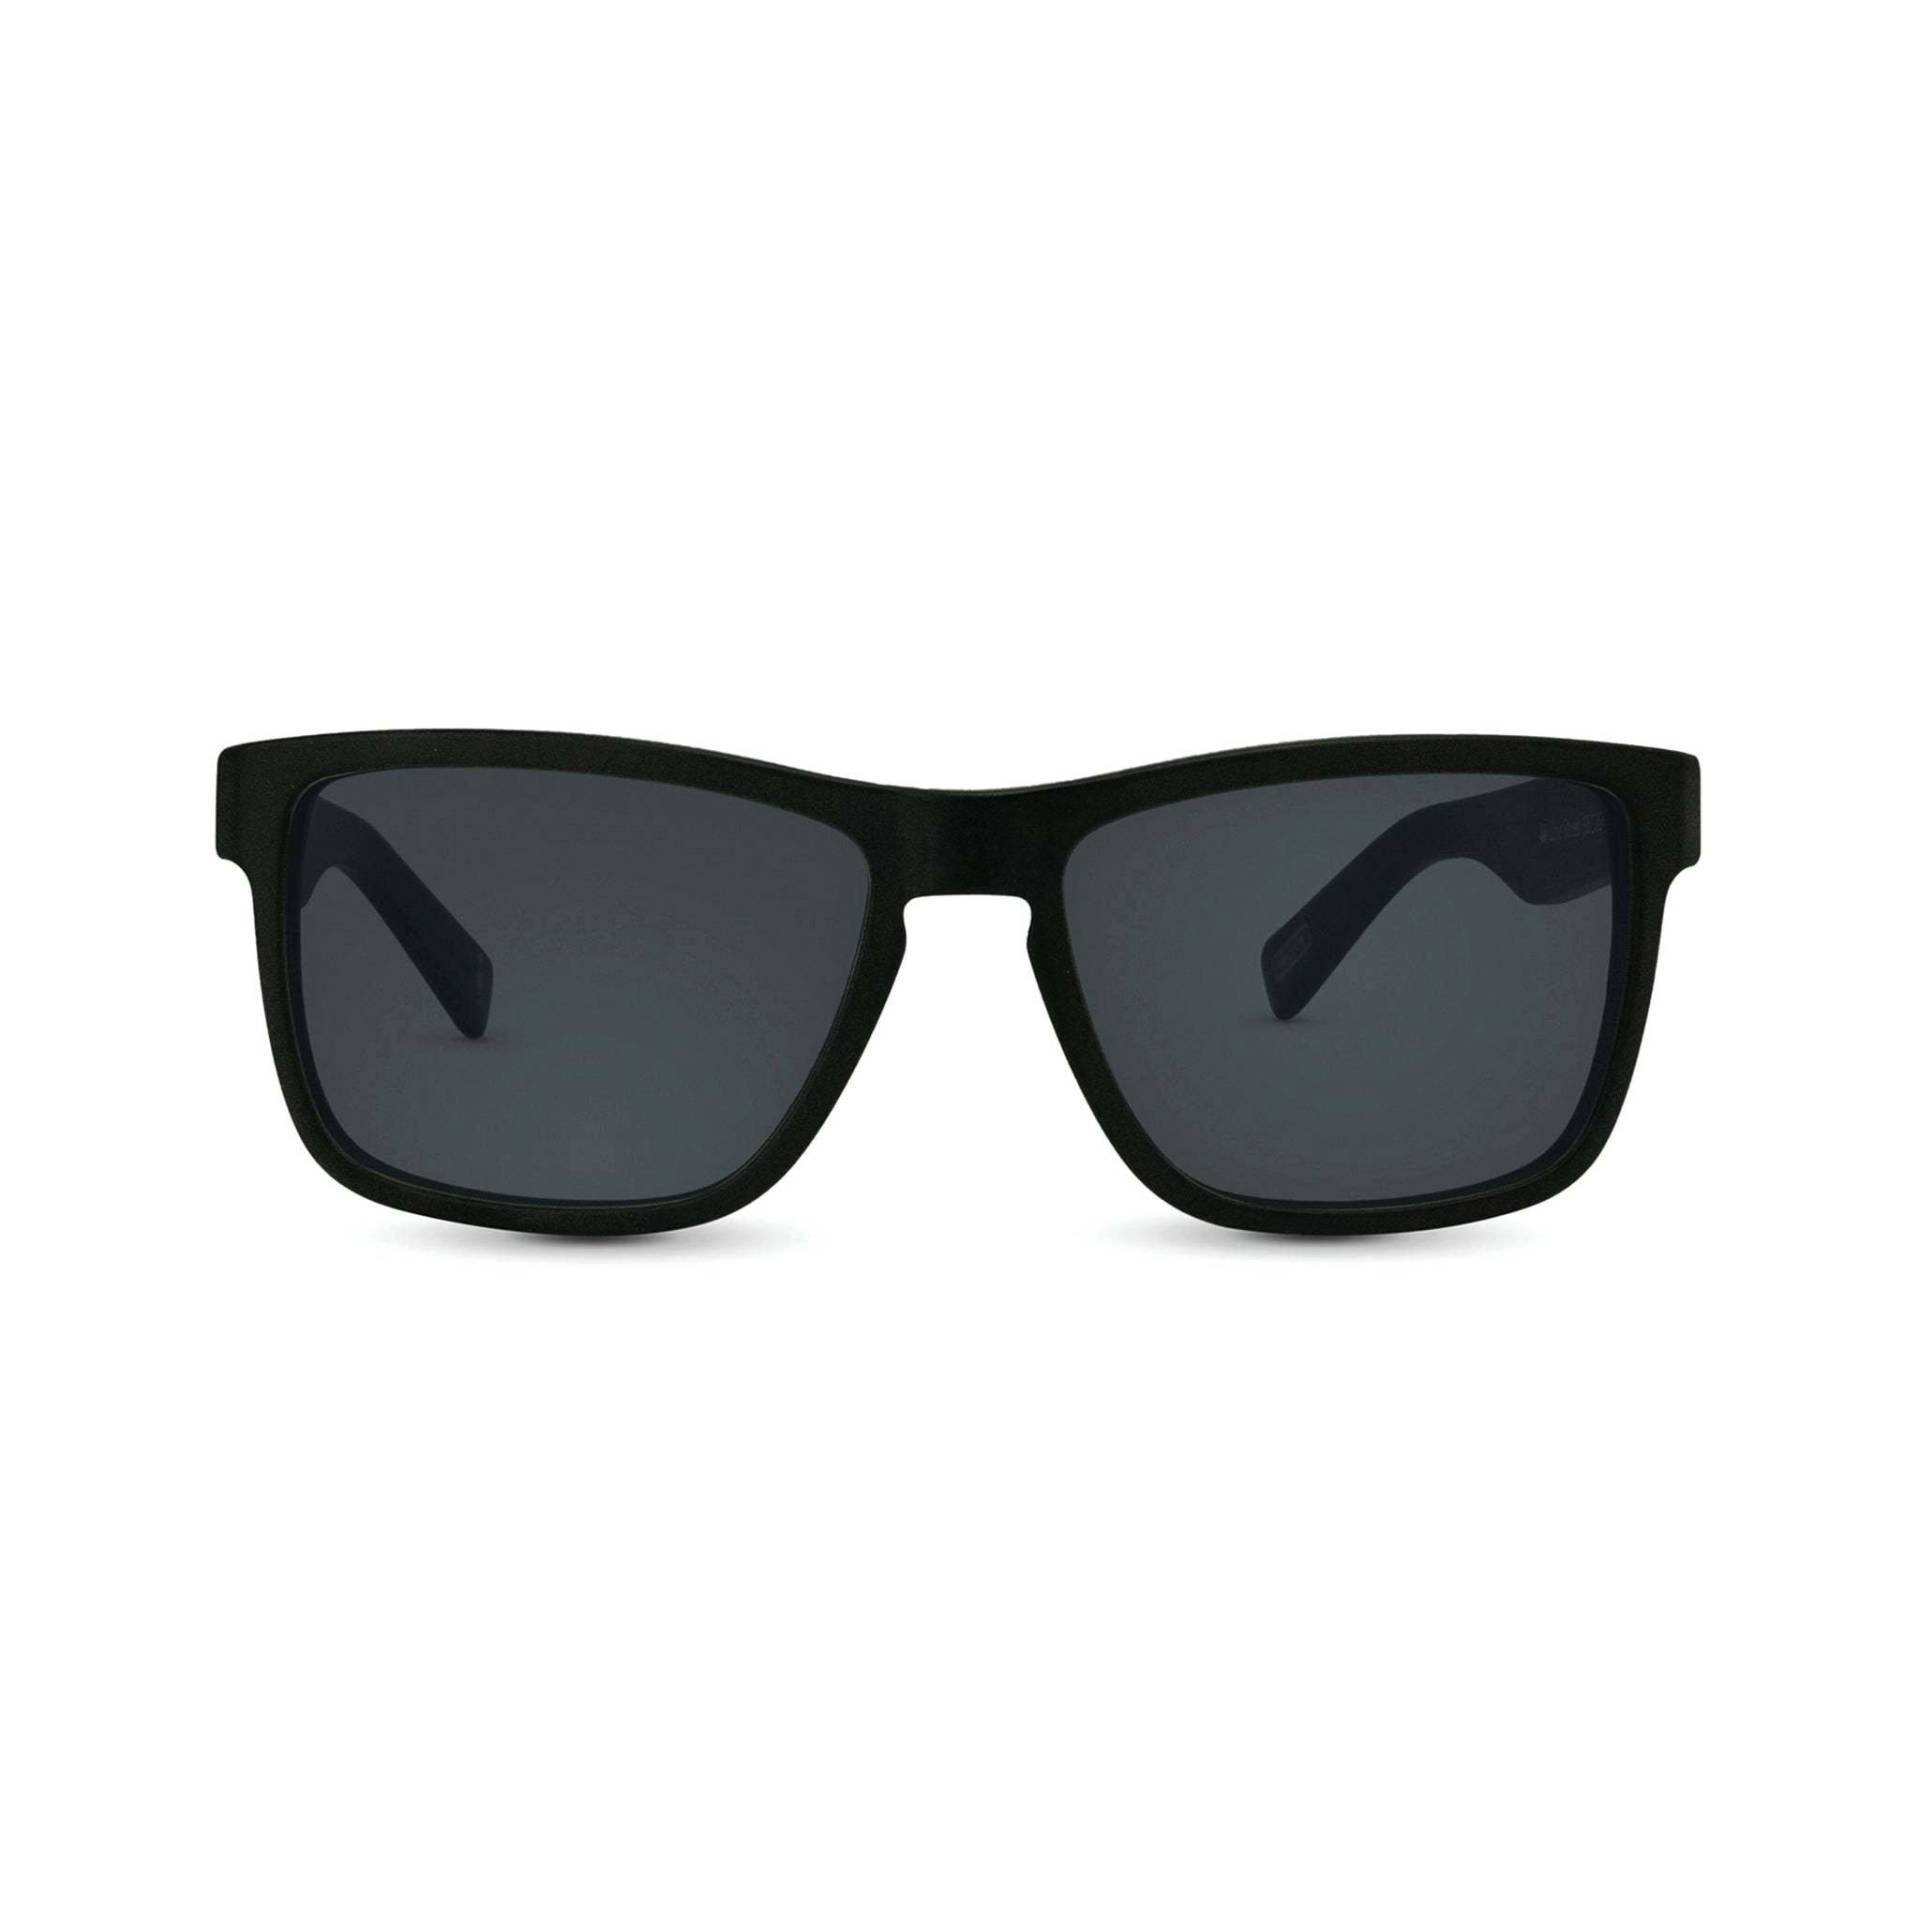 66 Line Street Sonnenbrille Damen Schwarz 45mm von Nectar